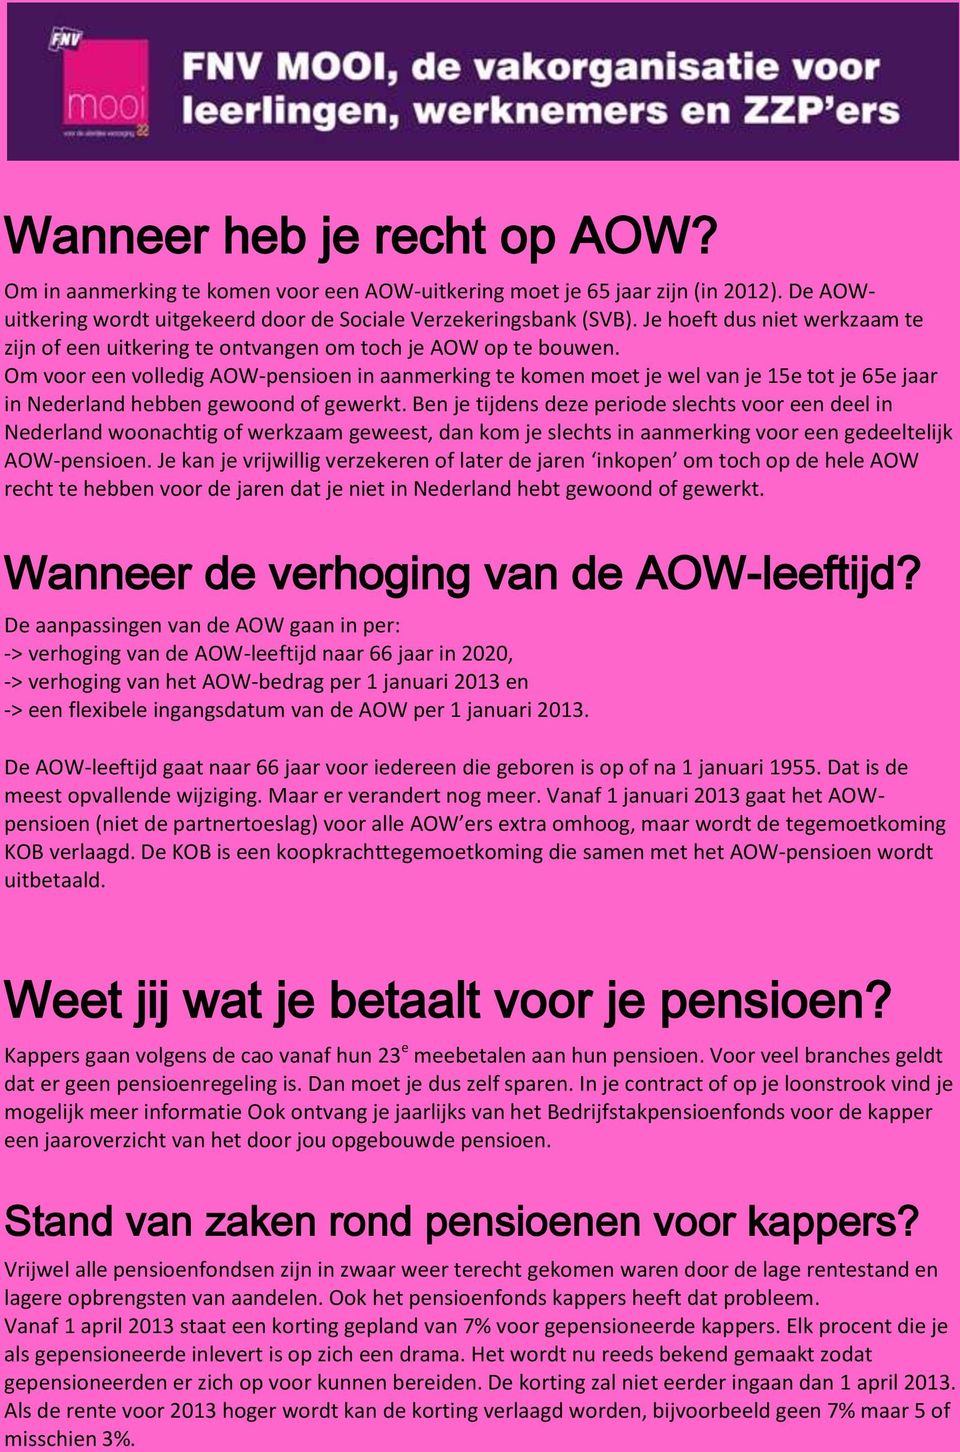 Om voor een volledig AOW-pensioen in aanmerking te komen moet je wel van je 15e tot je 65e jaar in Nederland hebben gewoond of gewerkt.